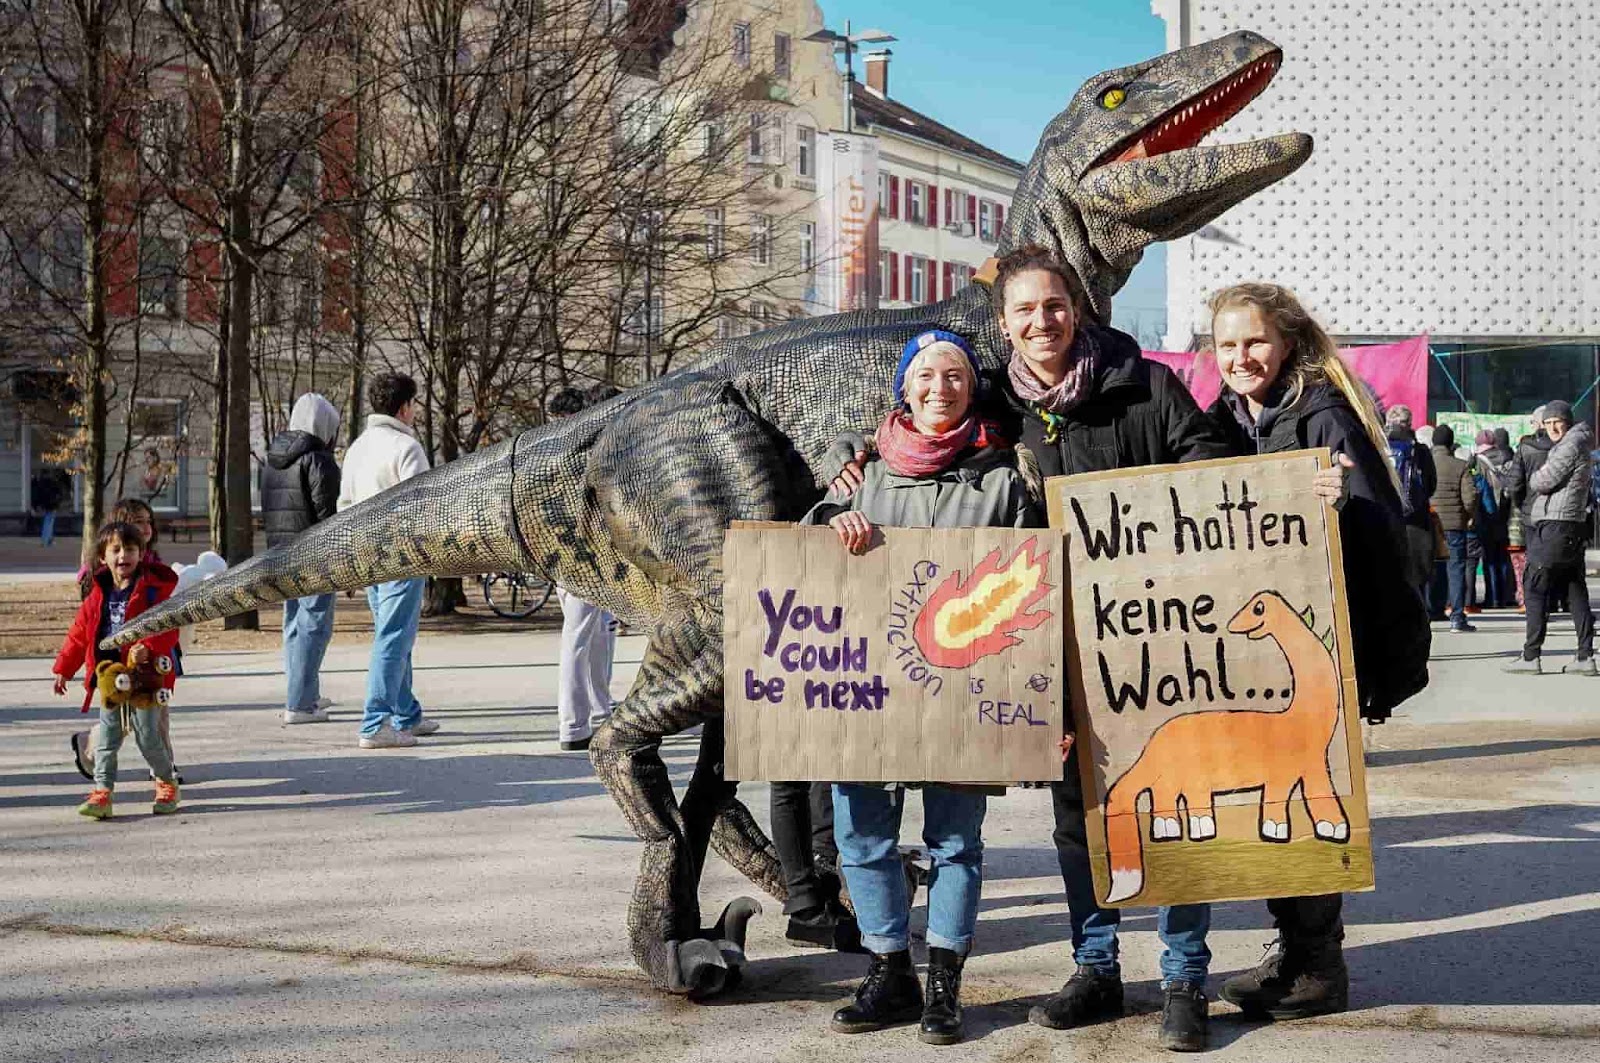 Rebels pose beside a life size raptor dinosaur.